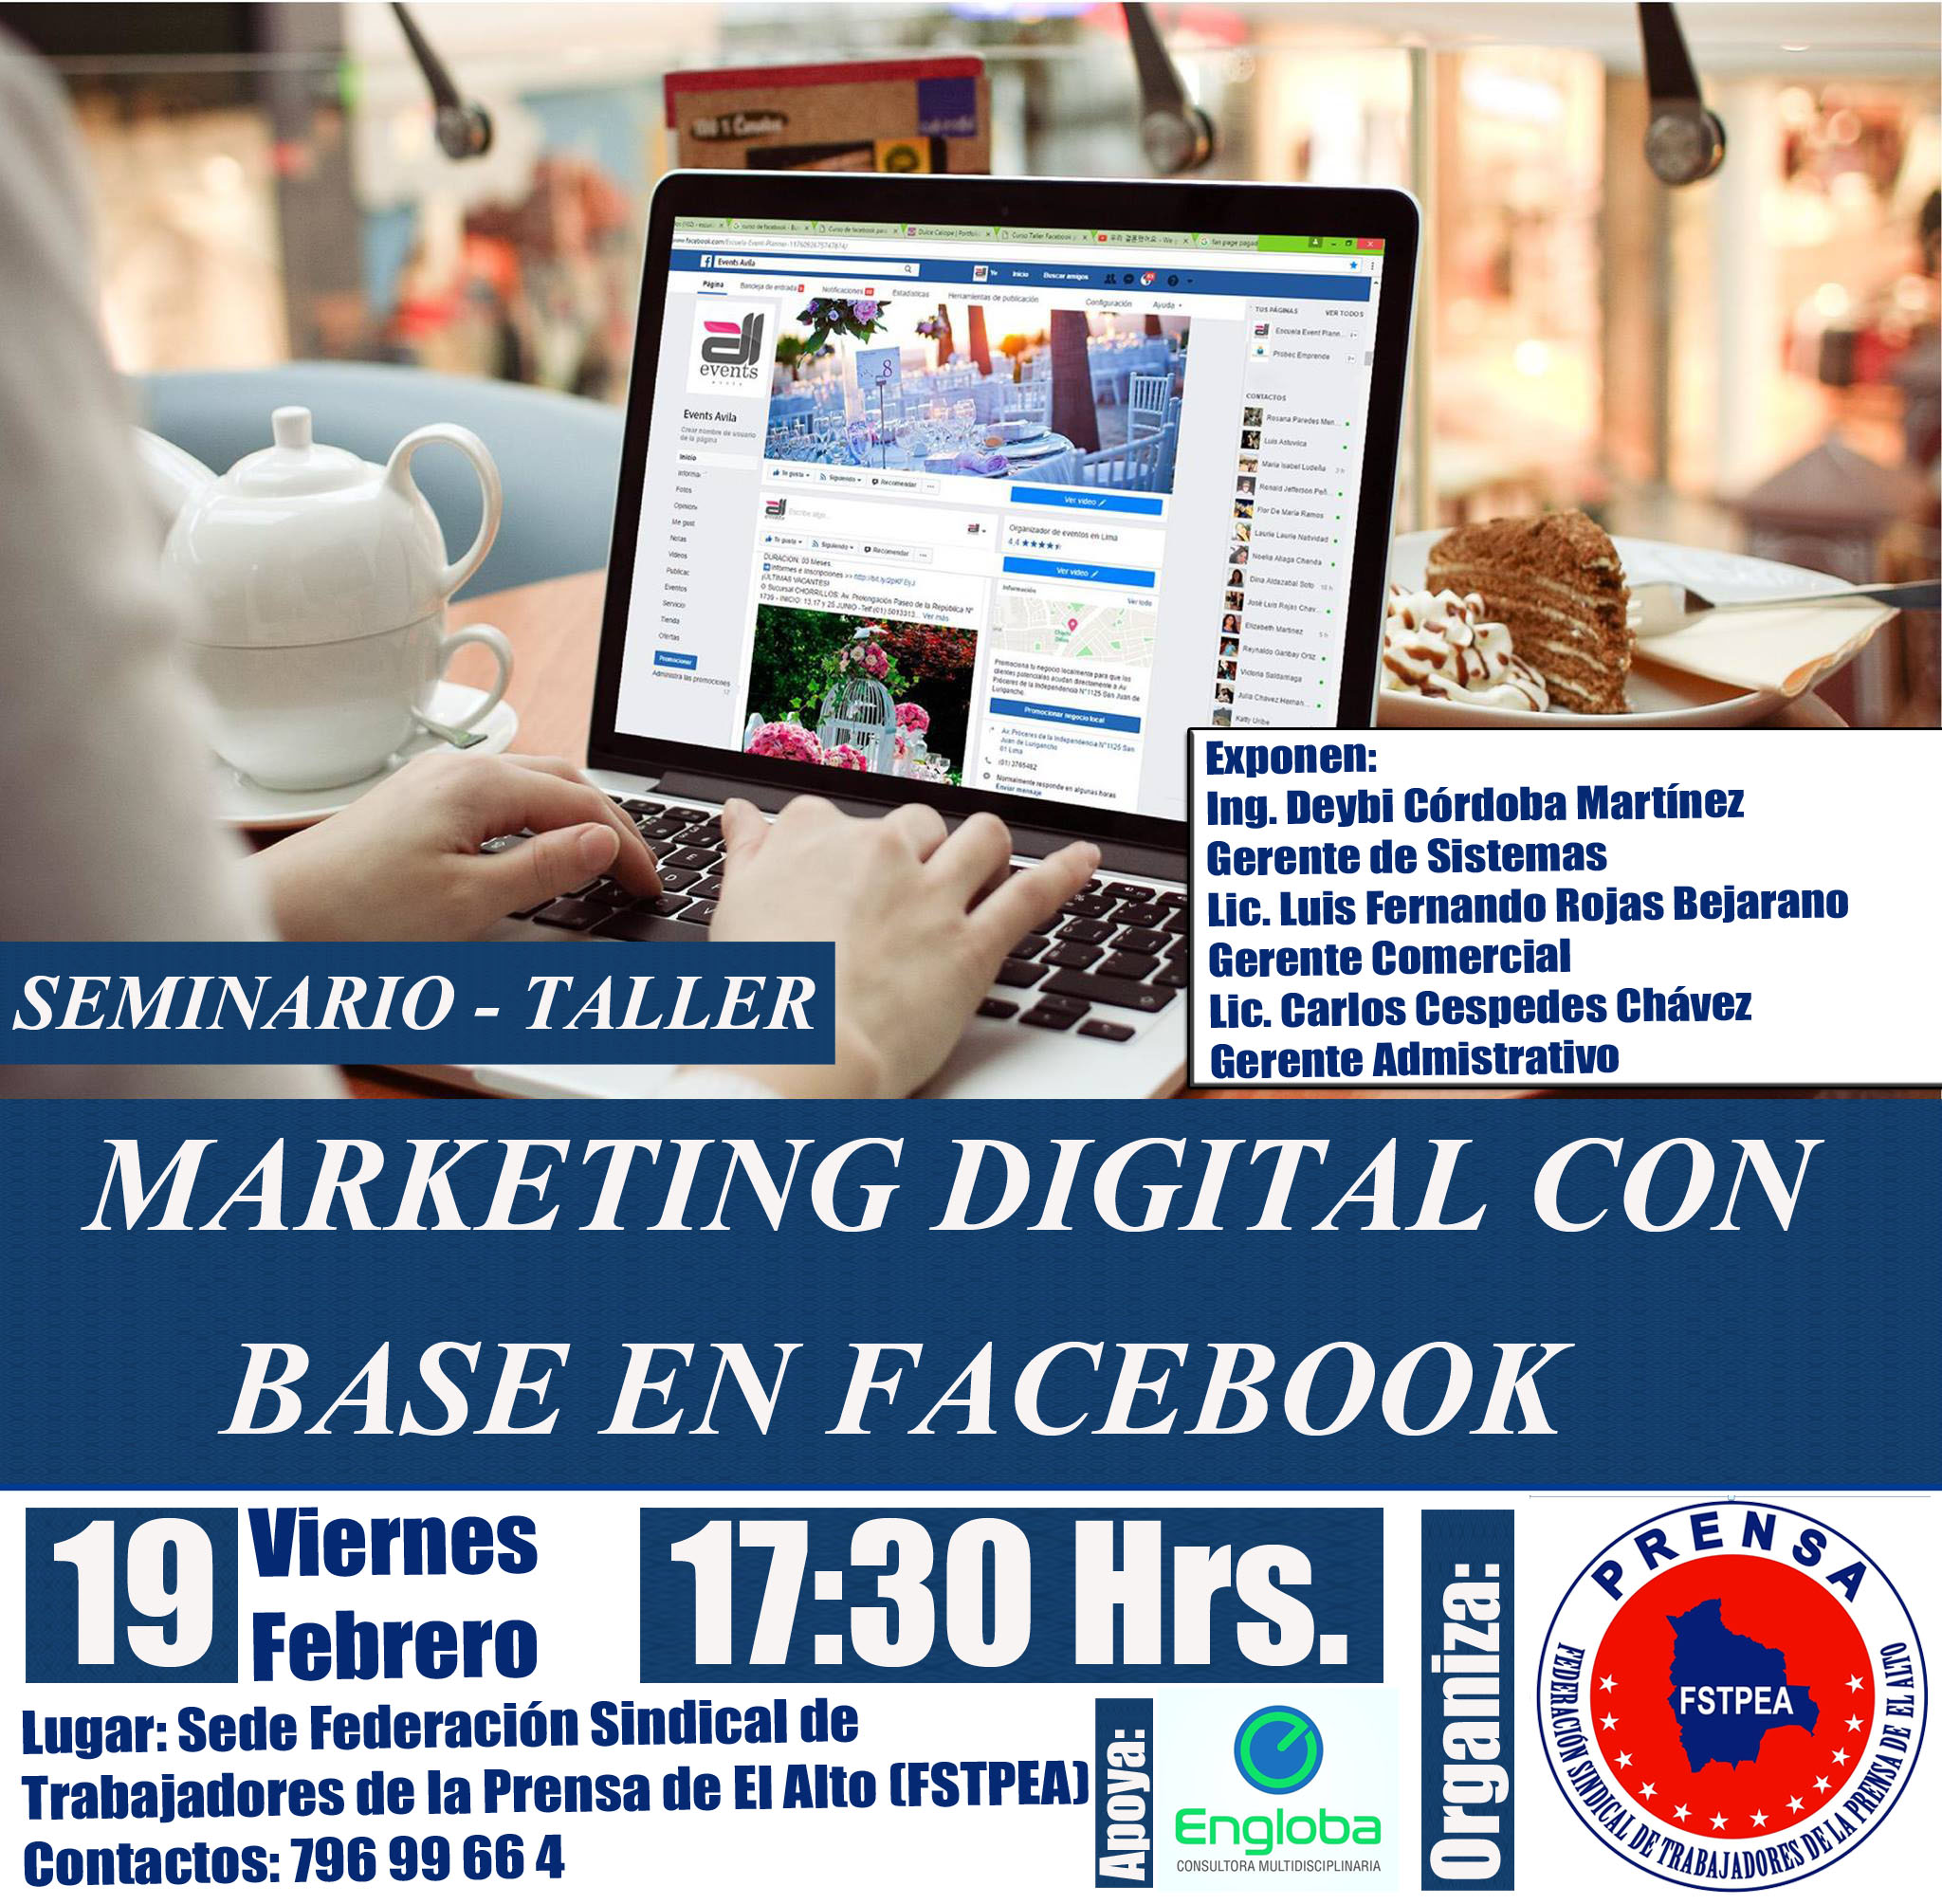 Afiche del Seminario “Marketing Digital con base en Facebook” organizado por la FSTPEA